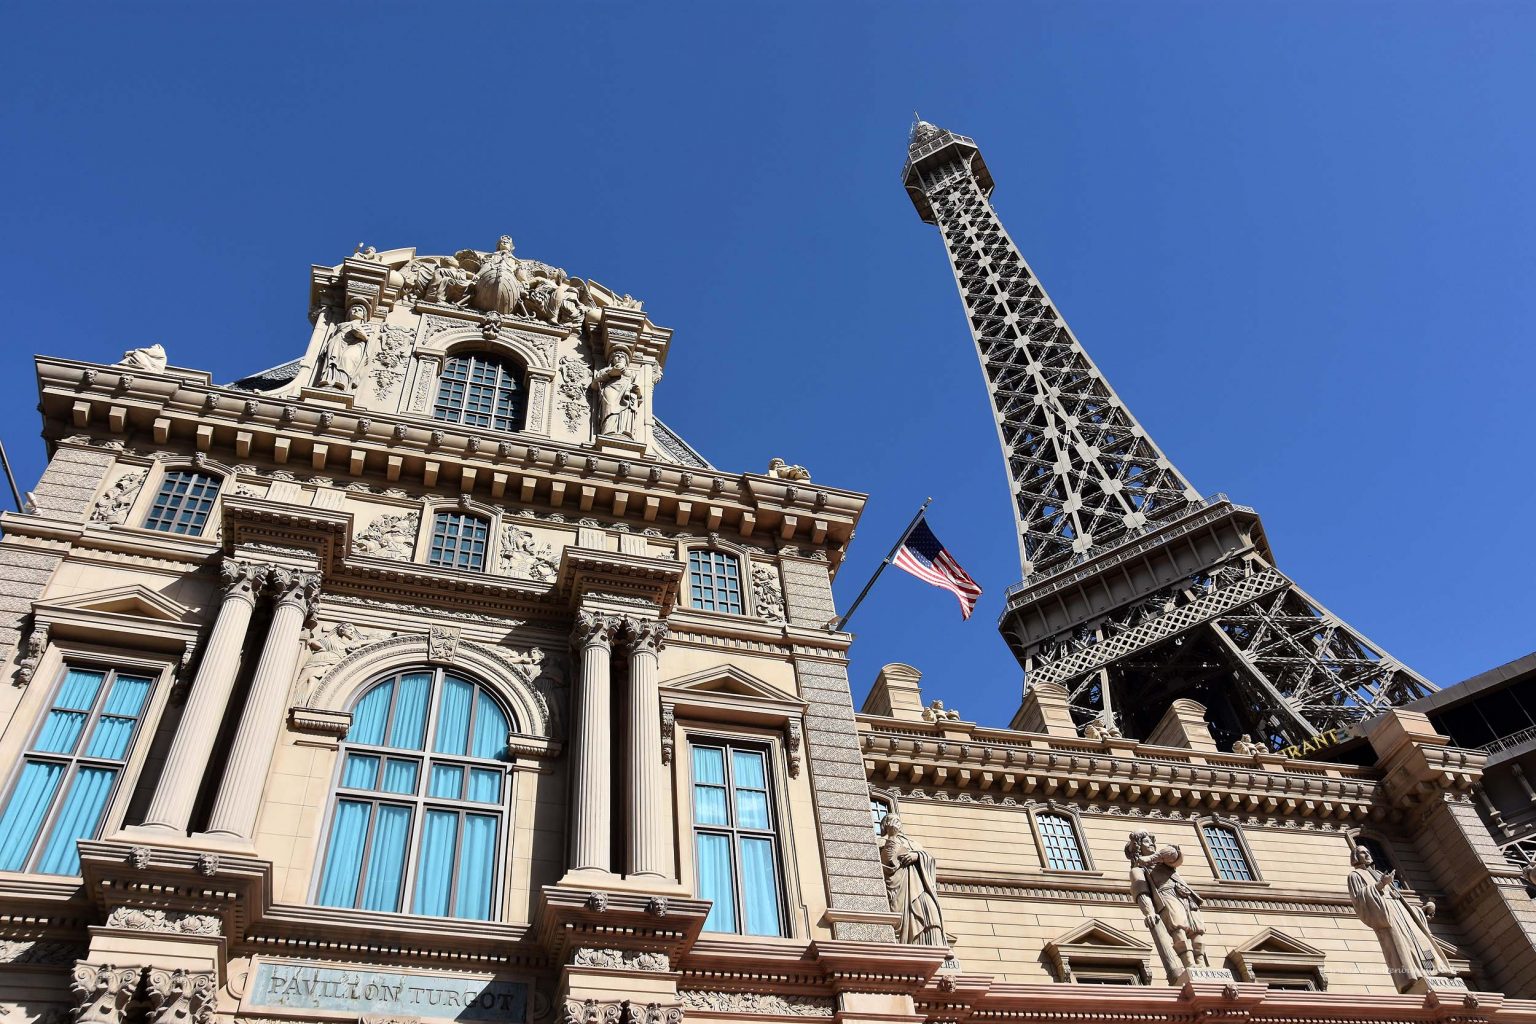 Hotel mit Eiffelturm